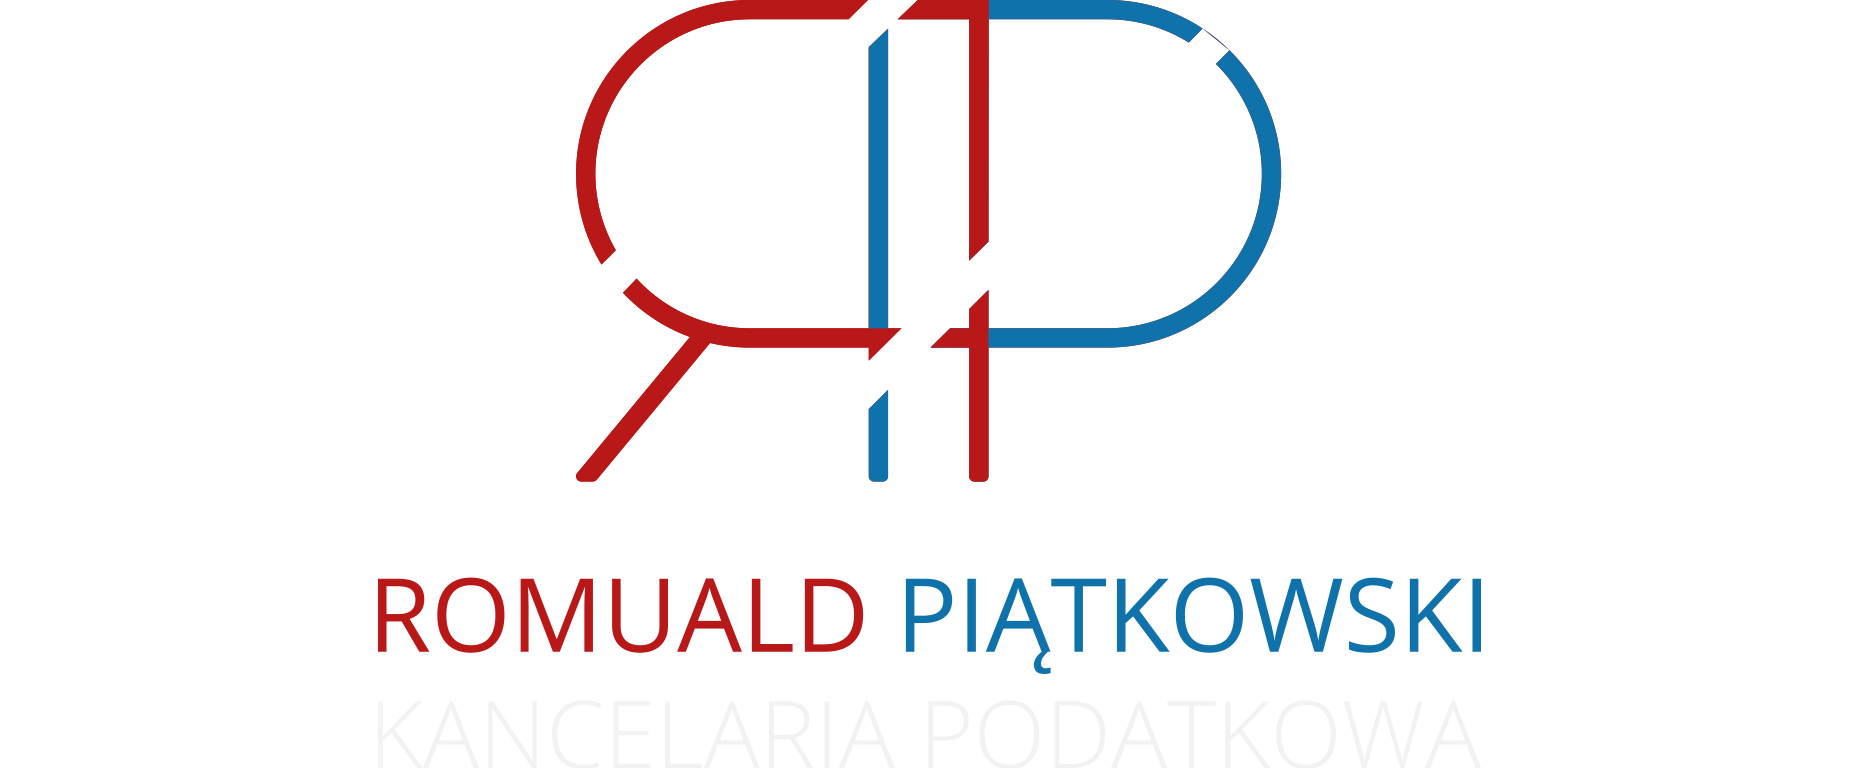 Romuald Piątkowski - Kancelaria podatkowa